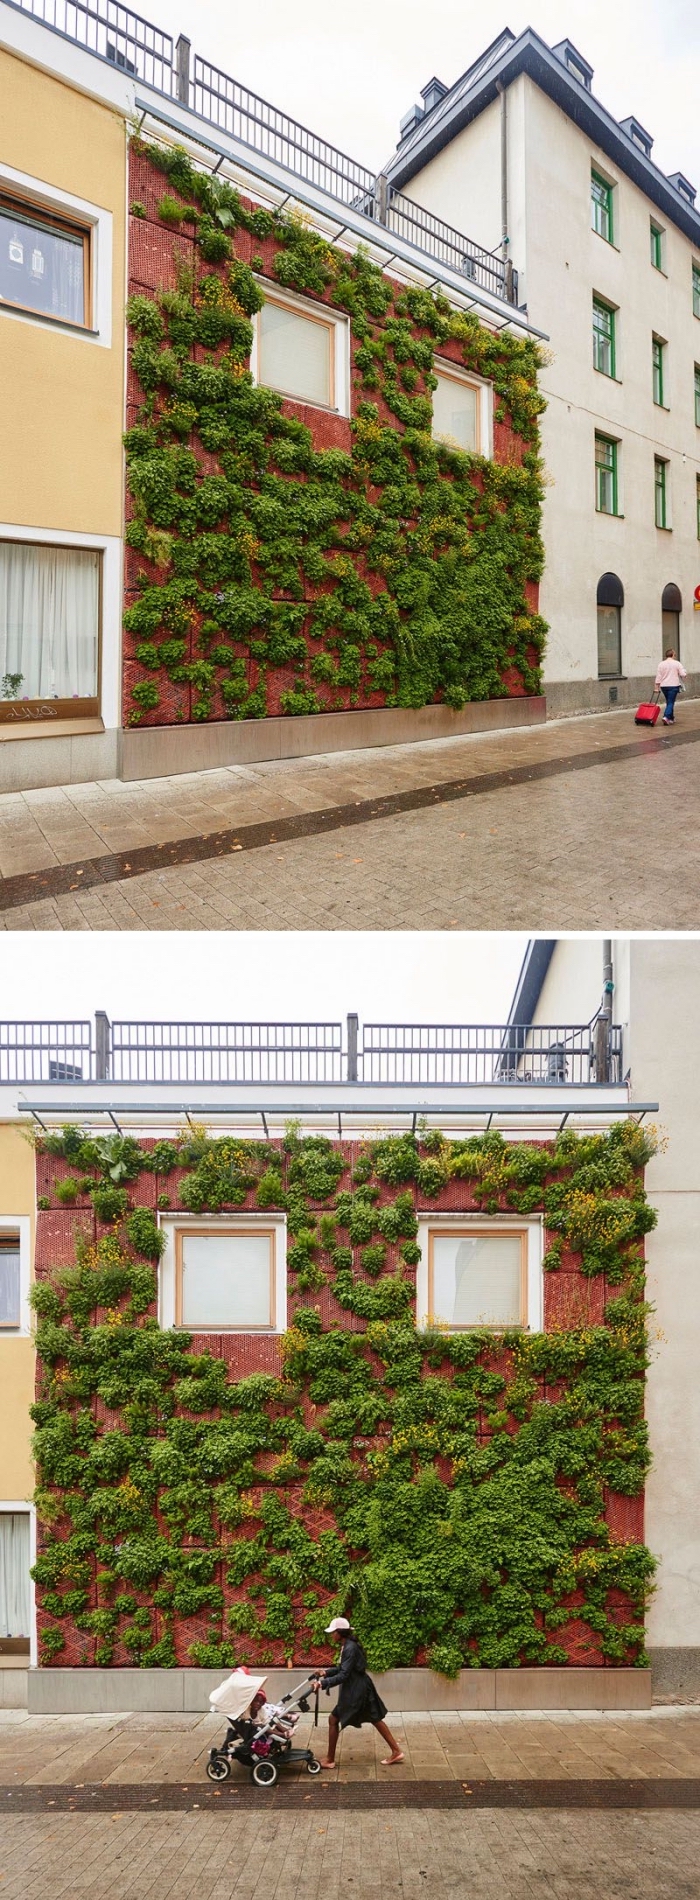 une façade végétalisée en plein milieu urbain qui apporte une touche de fraîcheur et contribue à l'assainissement de l'air , idée pour un mur végétalisé sur la façade d'une maison ou d'un bâtiment